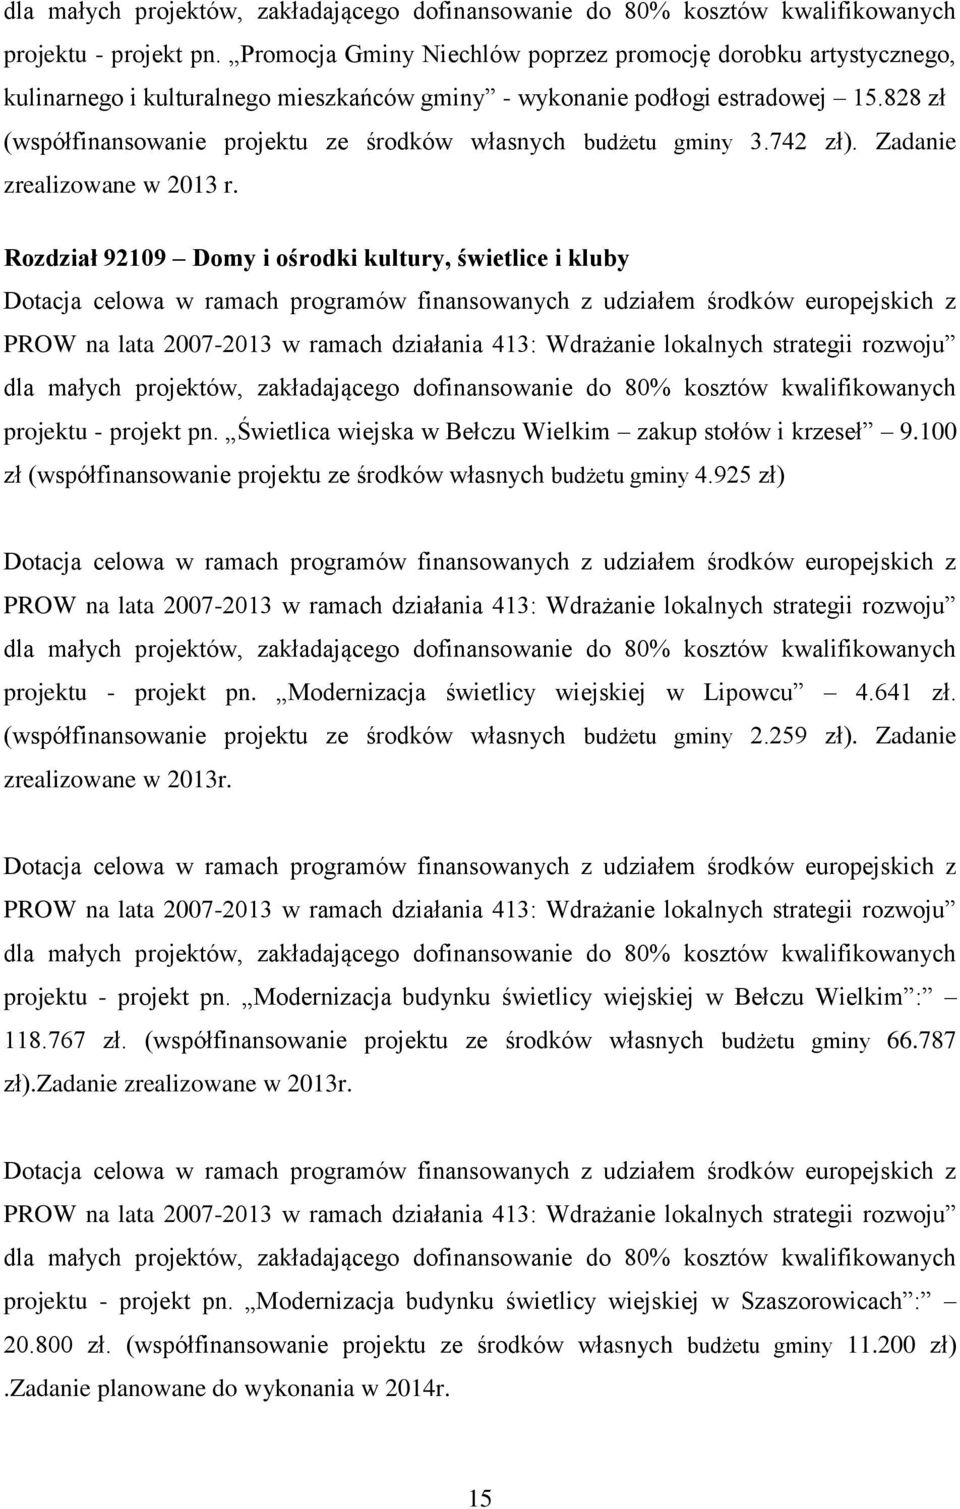 828 zł (współfinansowanie projektu ze środków własnych budżetu gminy 3.742 zł). Zadanie zrealizowane w 2013 r.